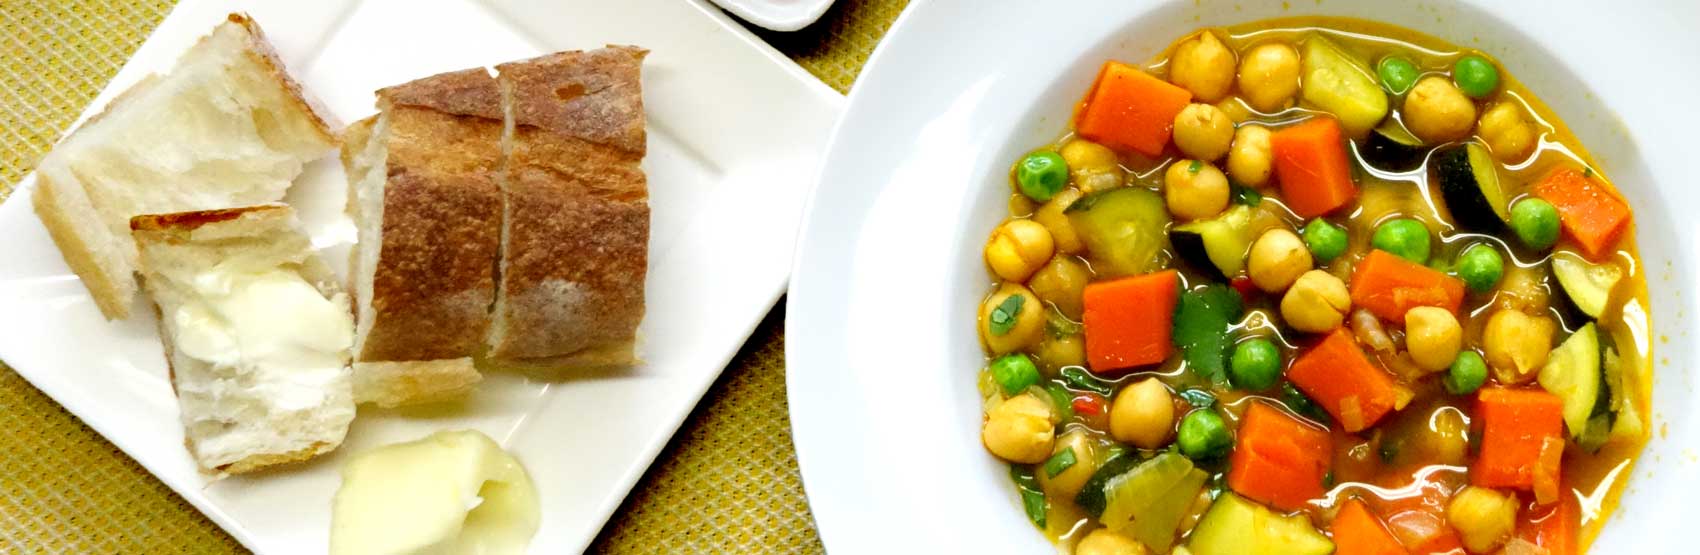 Soupe végétarienne aux pois chiches au curry à cuisson lente, servie avec du pain